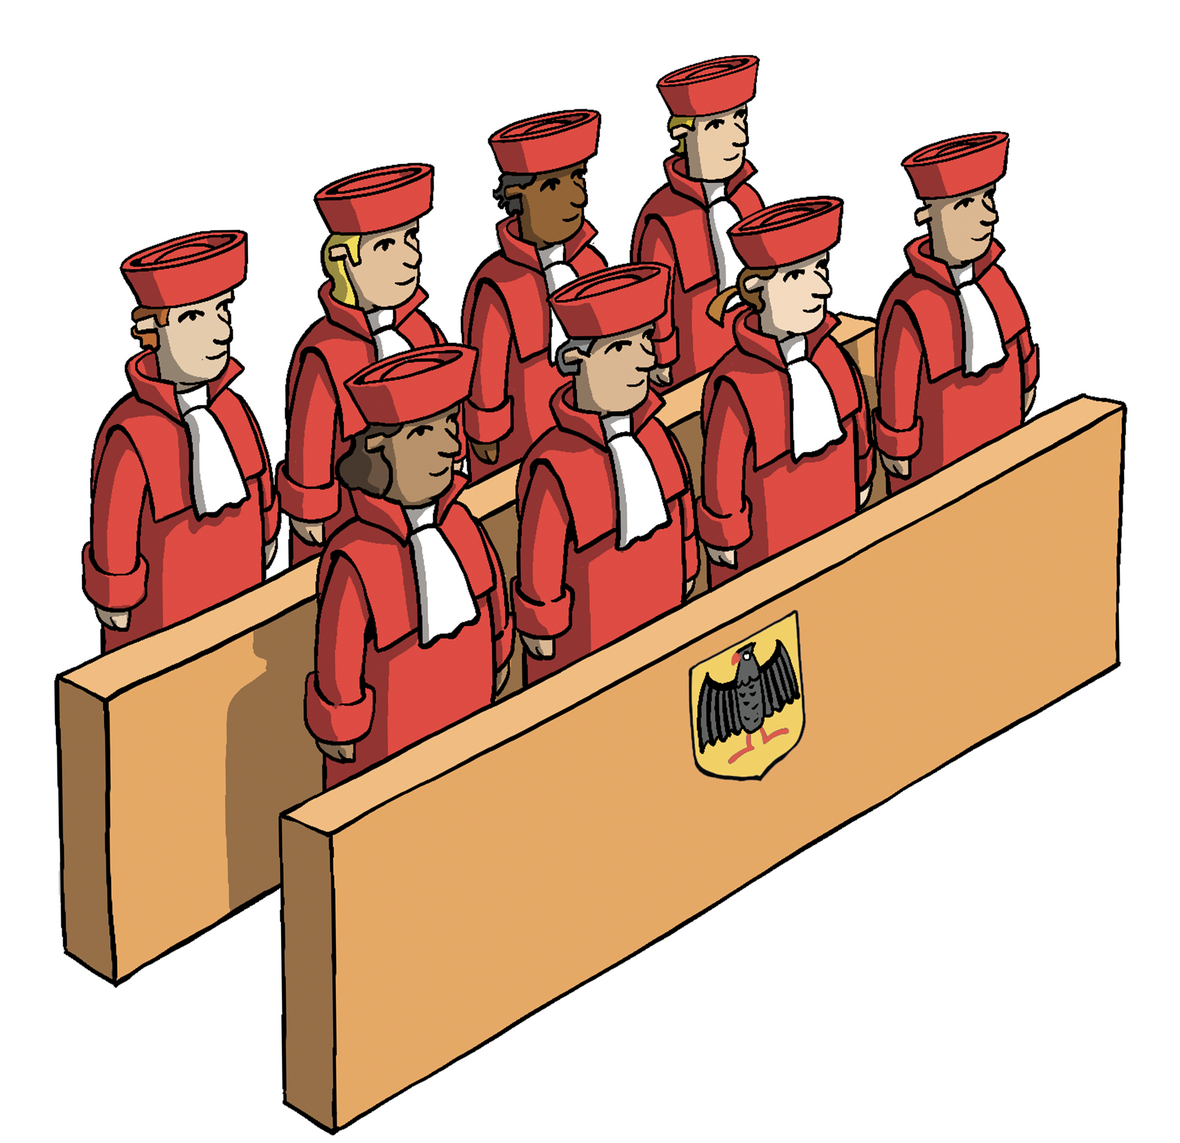 Man sieht die Richterinnen und Richter des Bundesverfassungsgerichts in den roten Roben. 